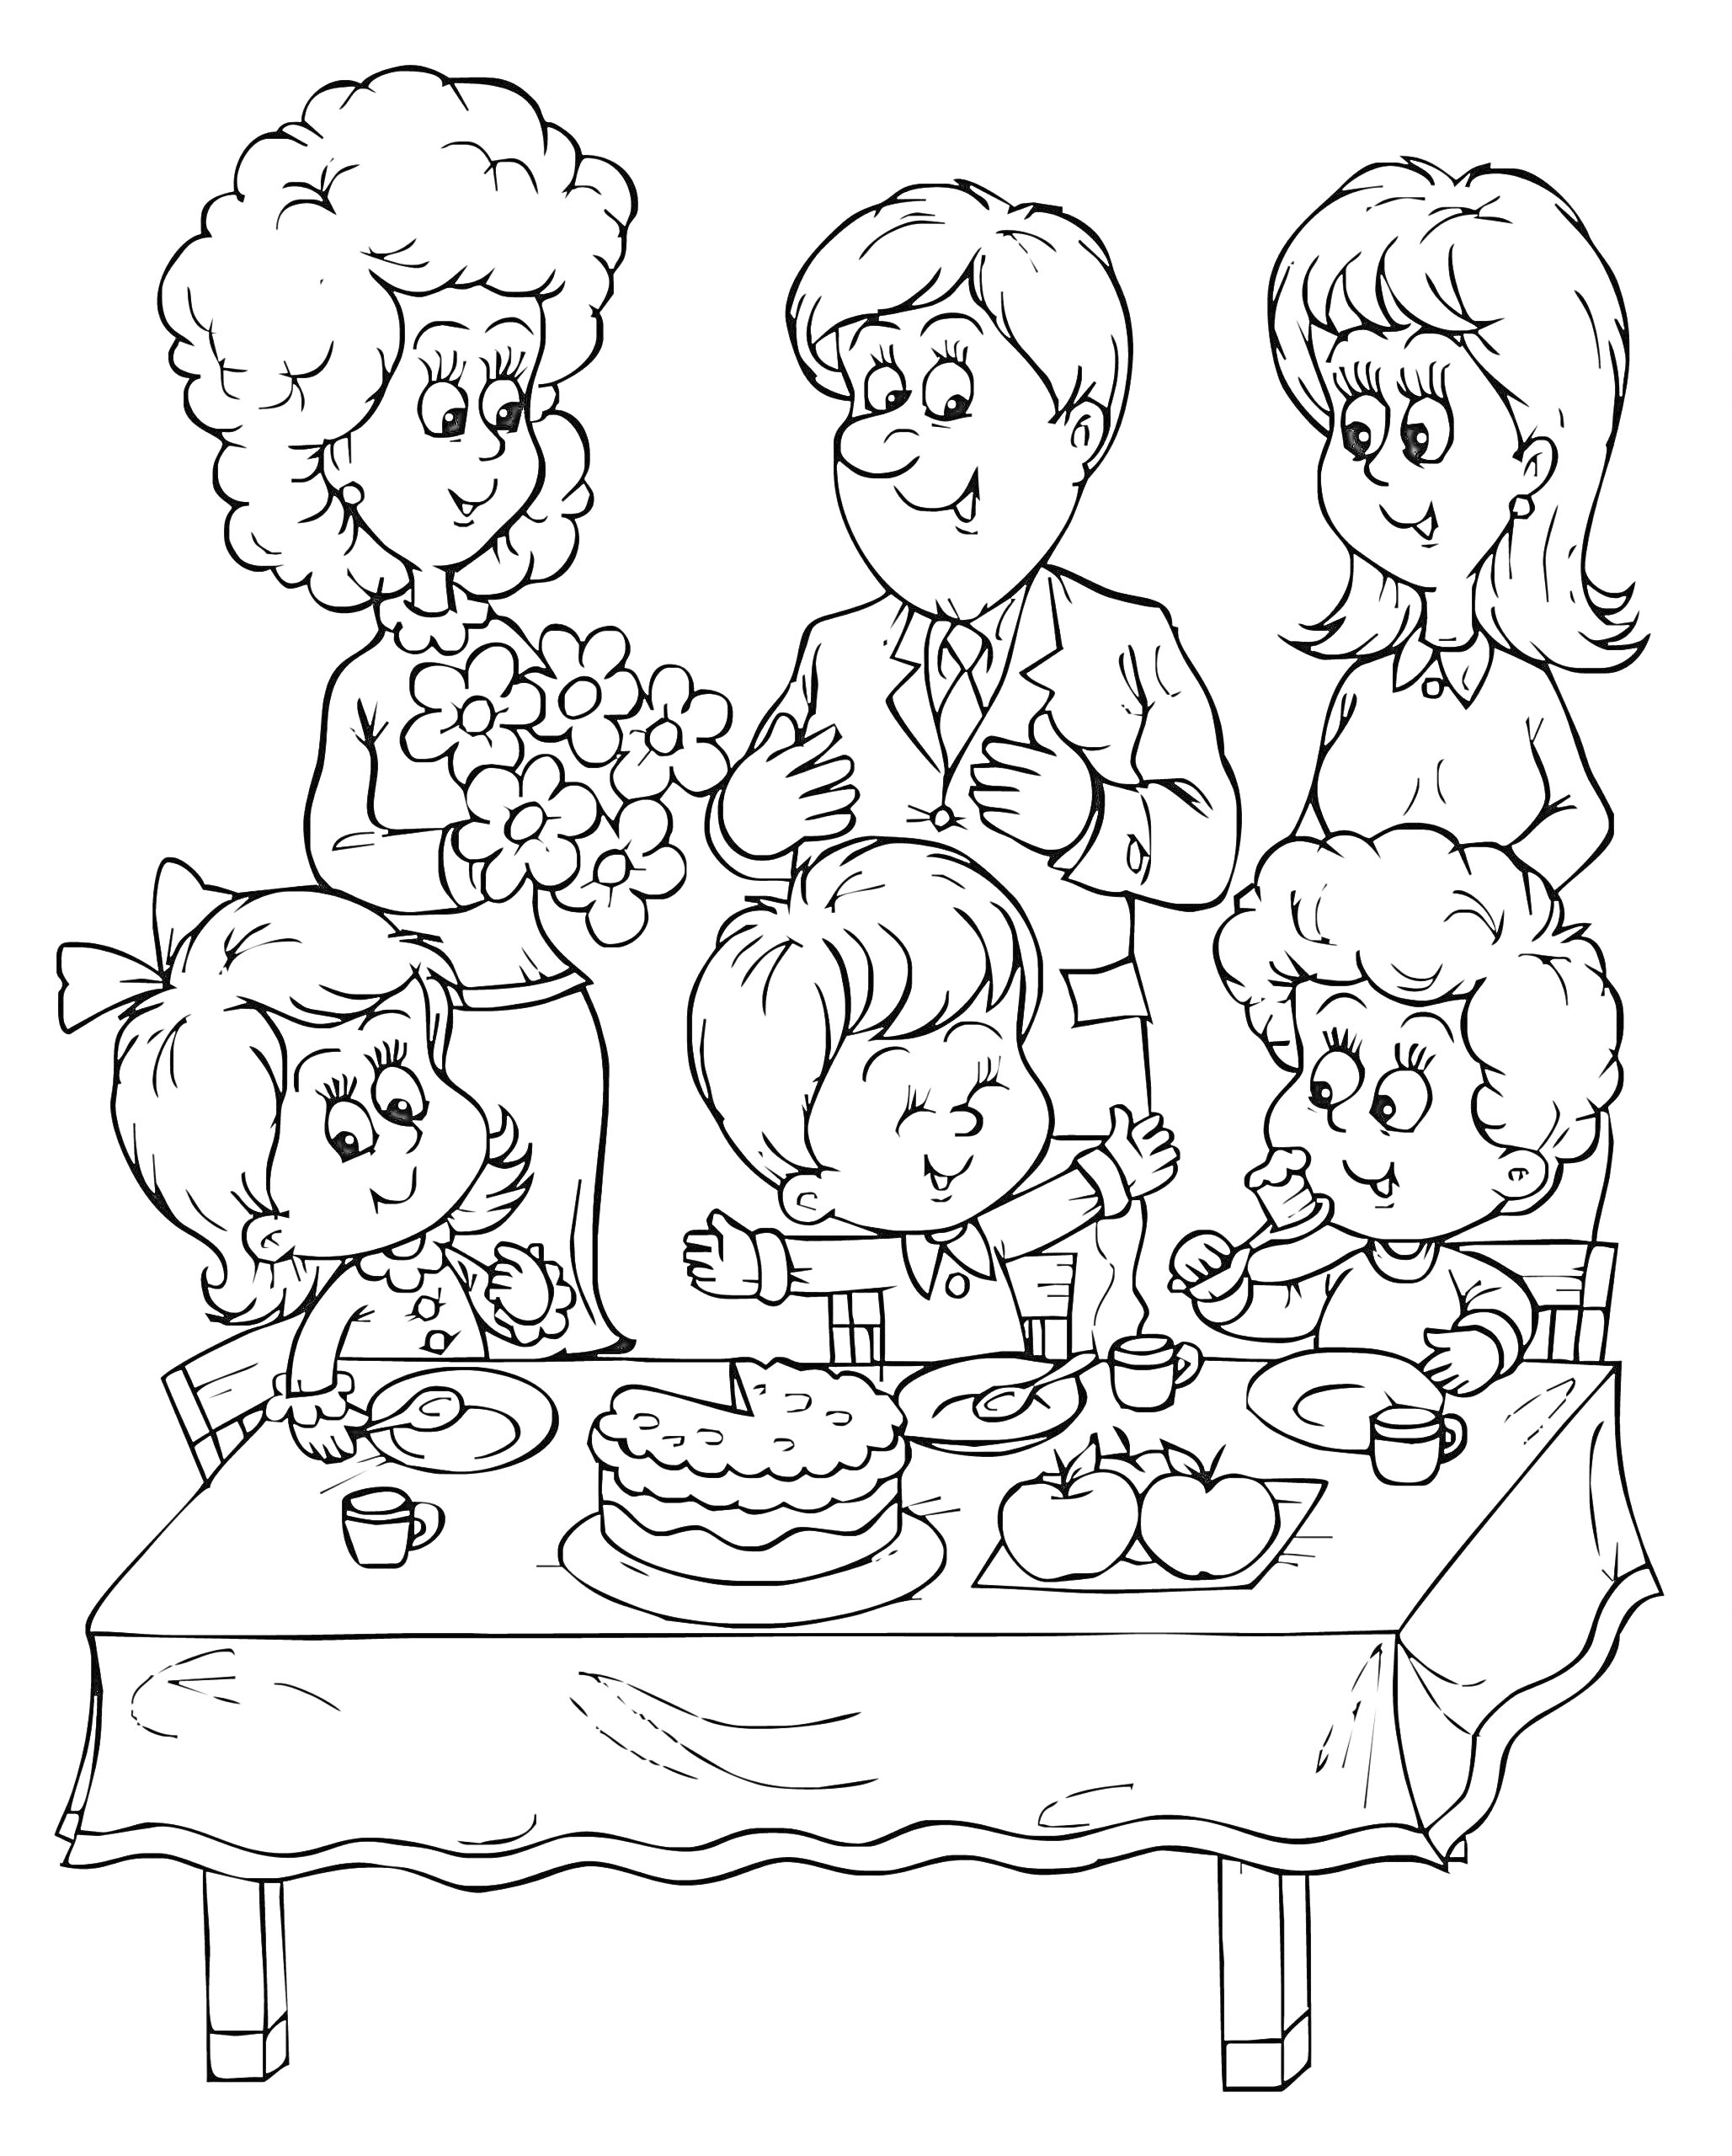 Празднование Дня защиты детей: дети за столом с десертами и взрослые с цветами